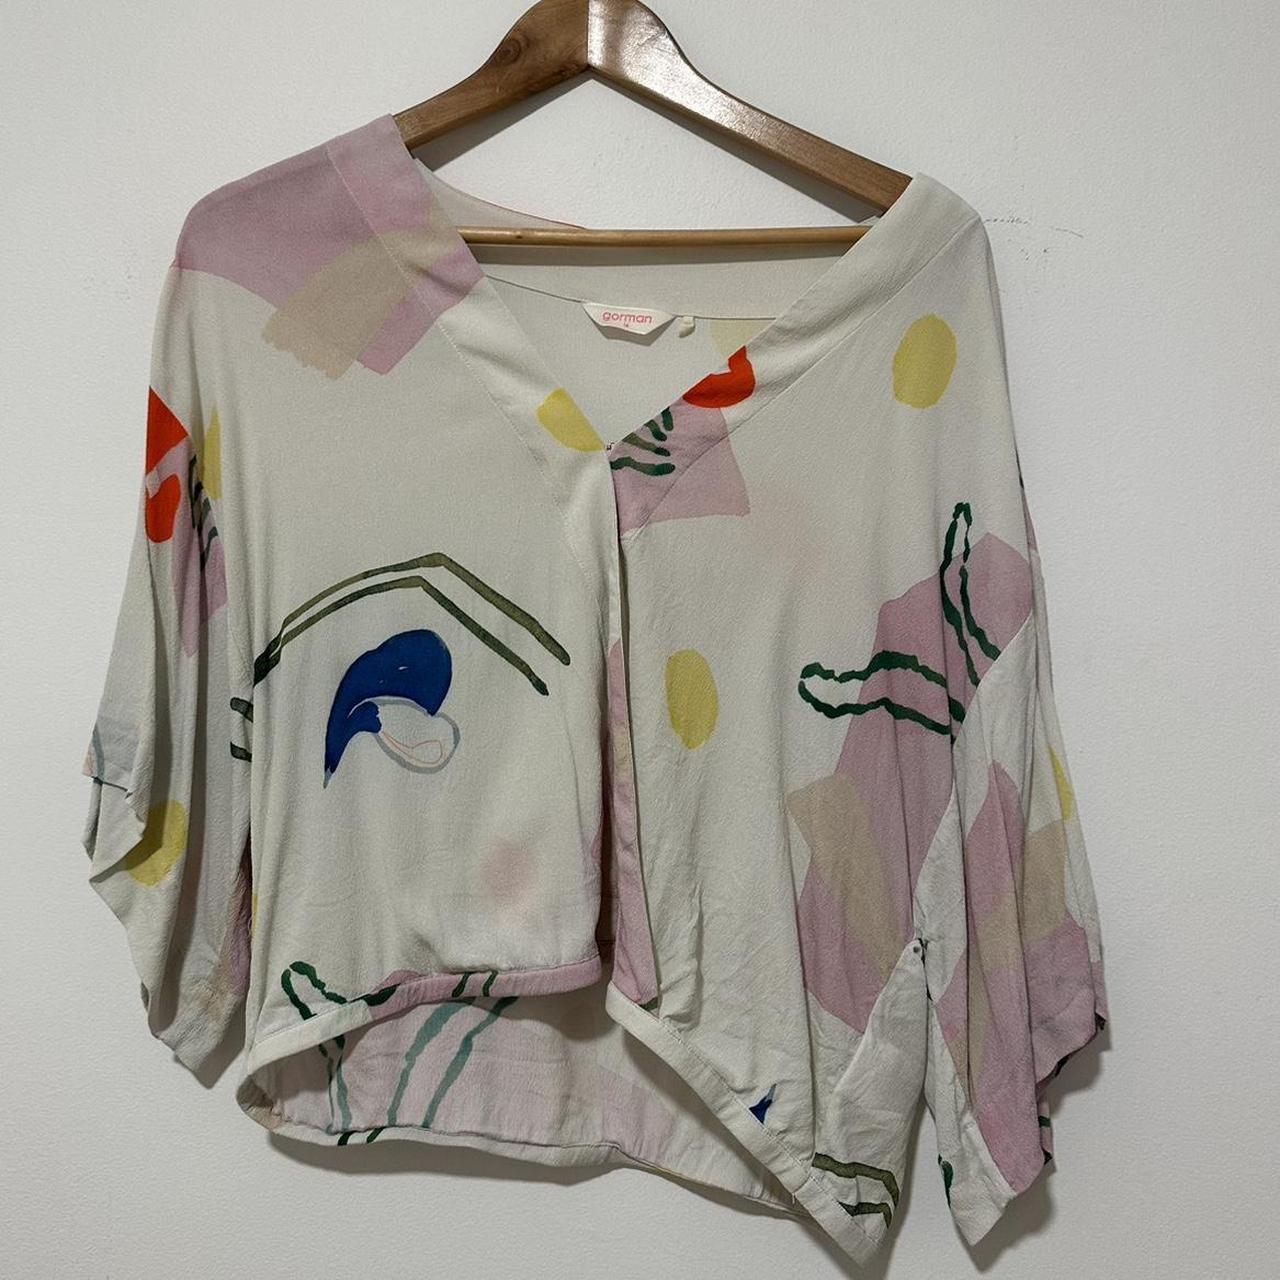 Gorman silk kimono top Size 16 Cropped print Smoke... - Depop